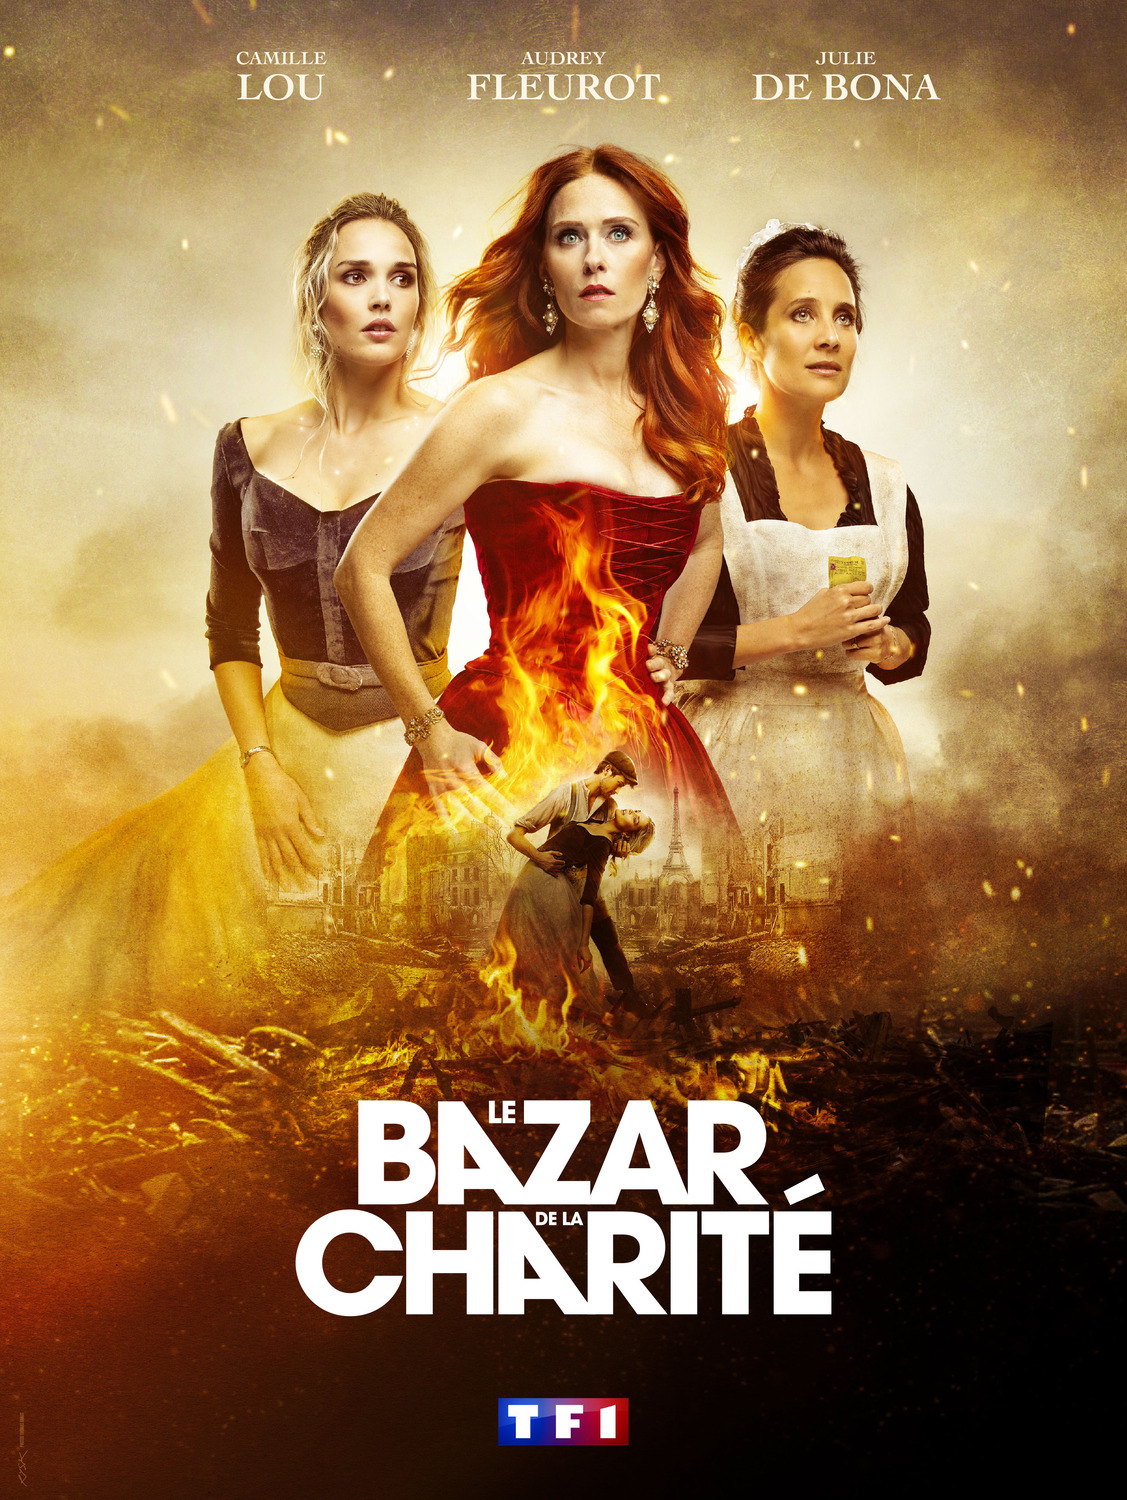 Extra Large TV Poster Image for Le Bazar de la Charité (#2 of 2)